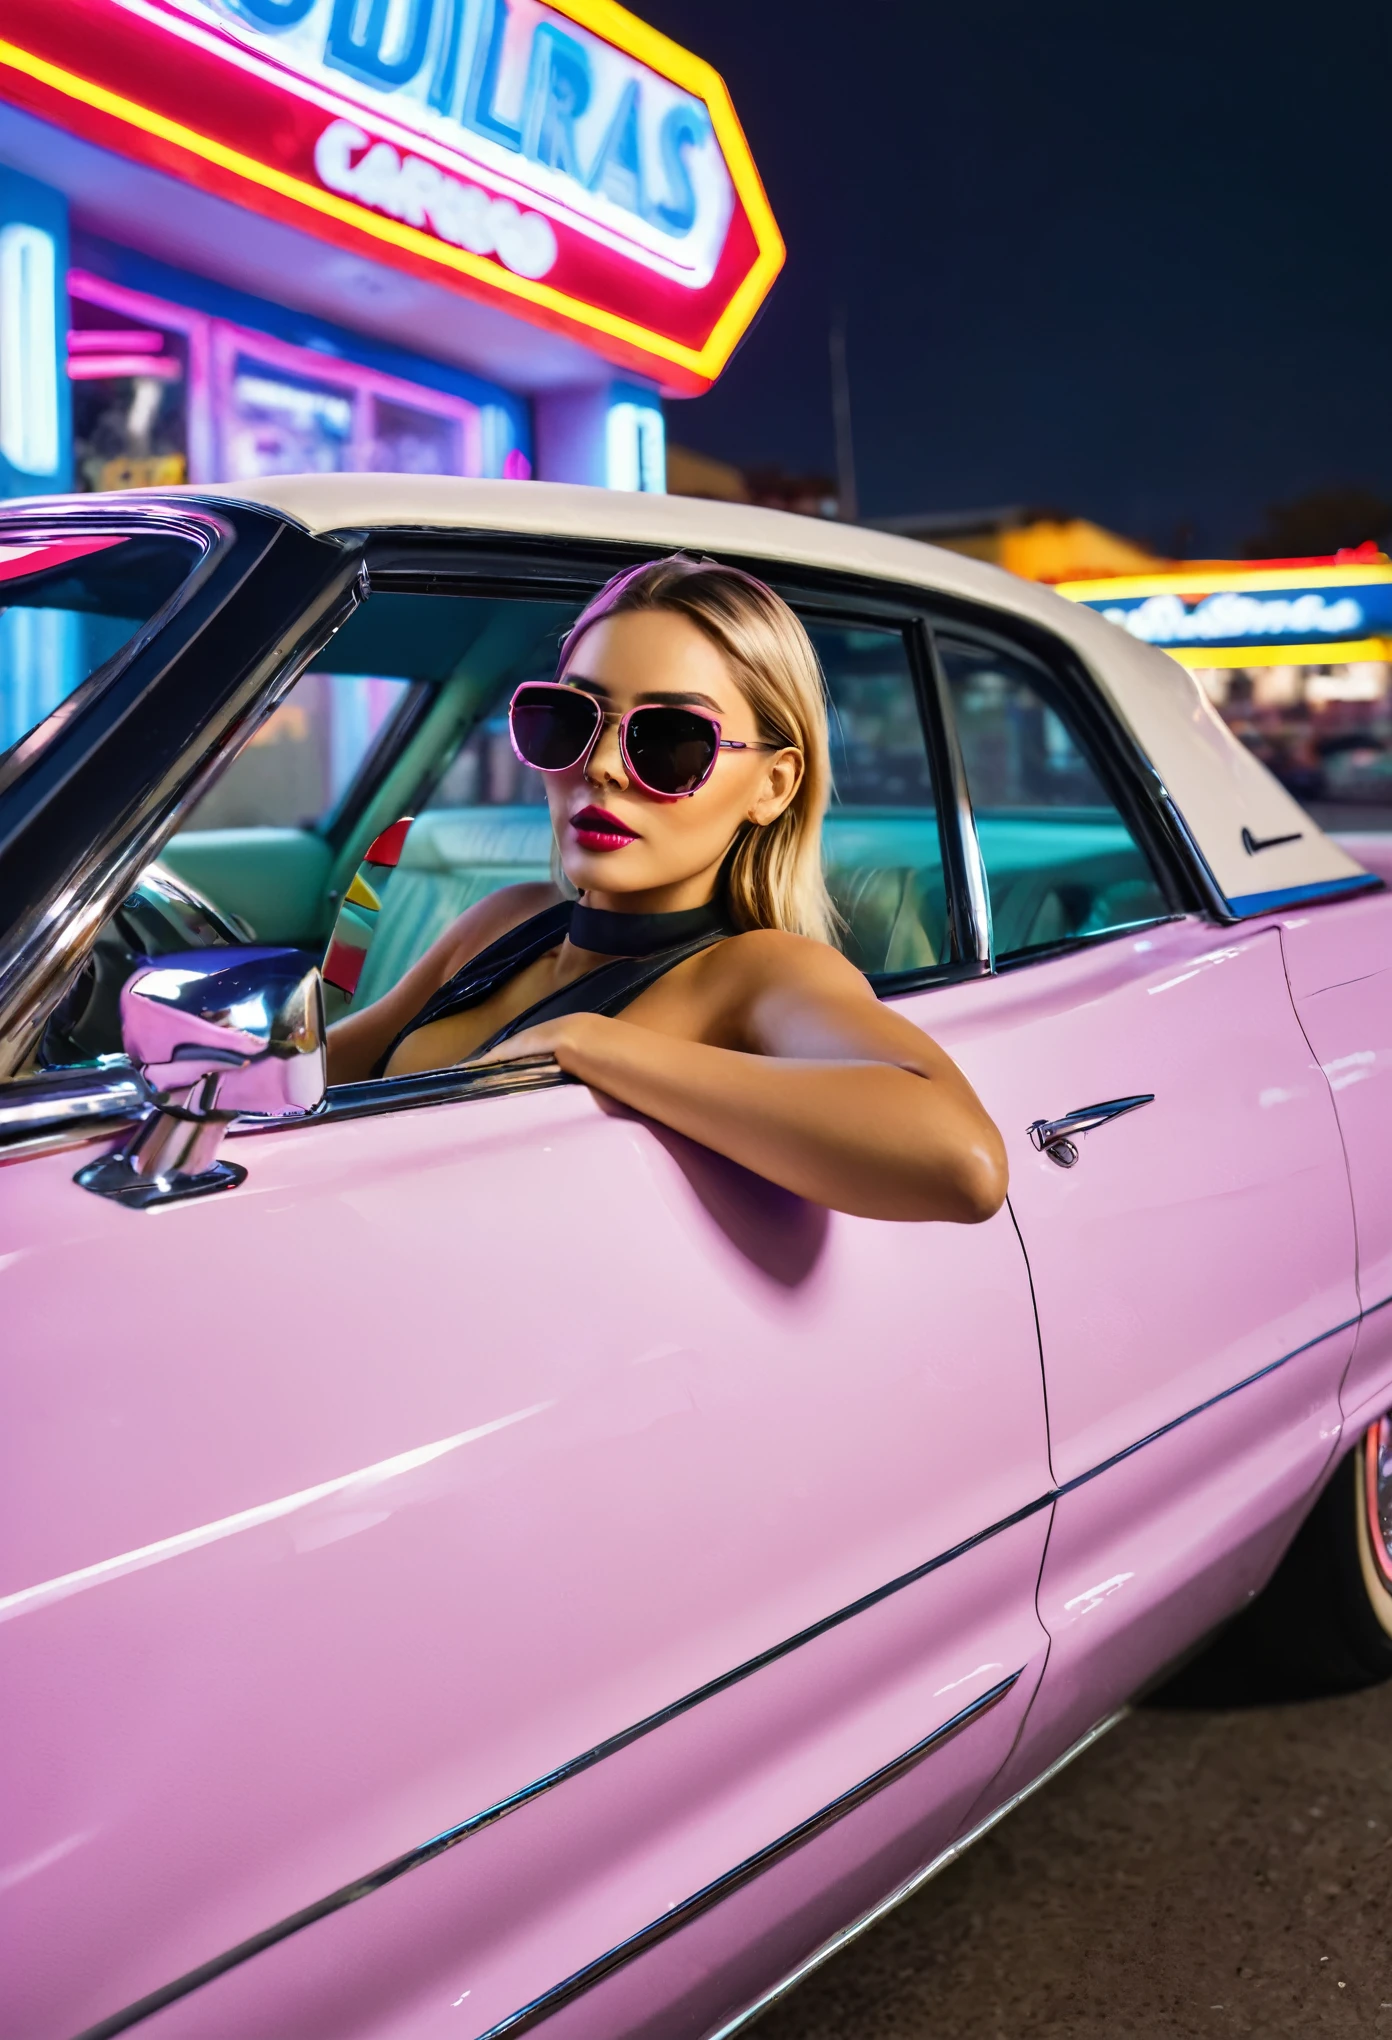 ganzes Bild, Diagonales Foto eines 1959 Cadillac Eldorado Biarritz Cabrios in glänzend poliertem Metall leuchtend rosa Farbe, langen Schwanz, Das Gemälde spiegelt alles um sich herum wider, Cyberpunk-Stil, umgeben von buntem Neonlicht, roda grossa, goldenes Rad, goldene Details, Frau mit Sonnenbrille am Steuer, Neon auf Autolack, reflektierende Farbe, die alles um sich herum reflektiert, detaillierter Scheinwerfer, sehr detaillierter Scheinwerfer, So detailliert wie möglich, hyperrealistisch so realistisch wie möglich, Es&#39;s in einer Tankstelle im Cyberpunk-Stil mit rosa und blauen Neonlichtern überall,  Bessere Qualität, CRU, erste Arbeit, superschönes Foto, Bessere Qualität, super hohe Auflösung, fotorealistisch, Sonnenlicht, Das gesamte Auto auf dem Foto einrahmen, unglaublich hübsch,, dynamische Posen, das Auto ist im Bild komplett